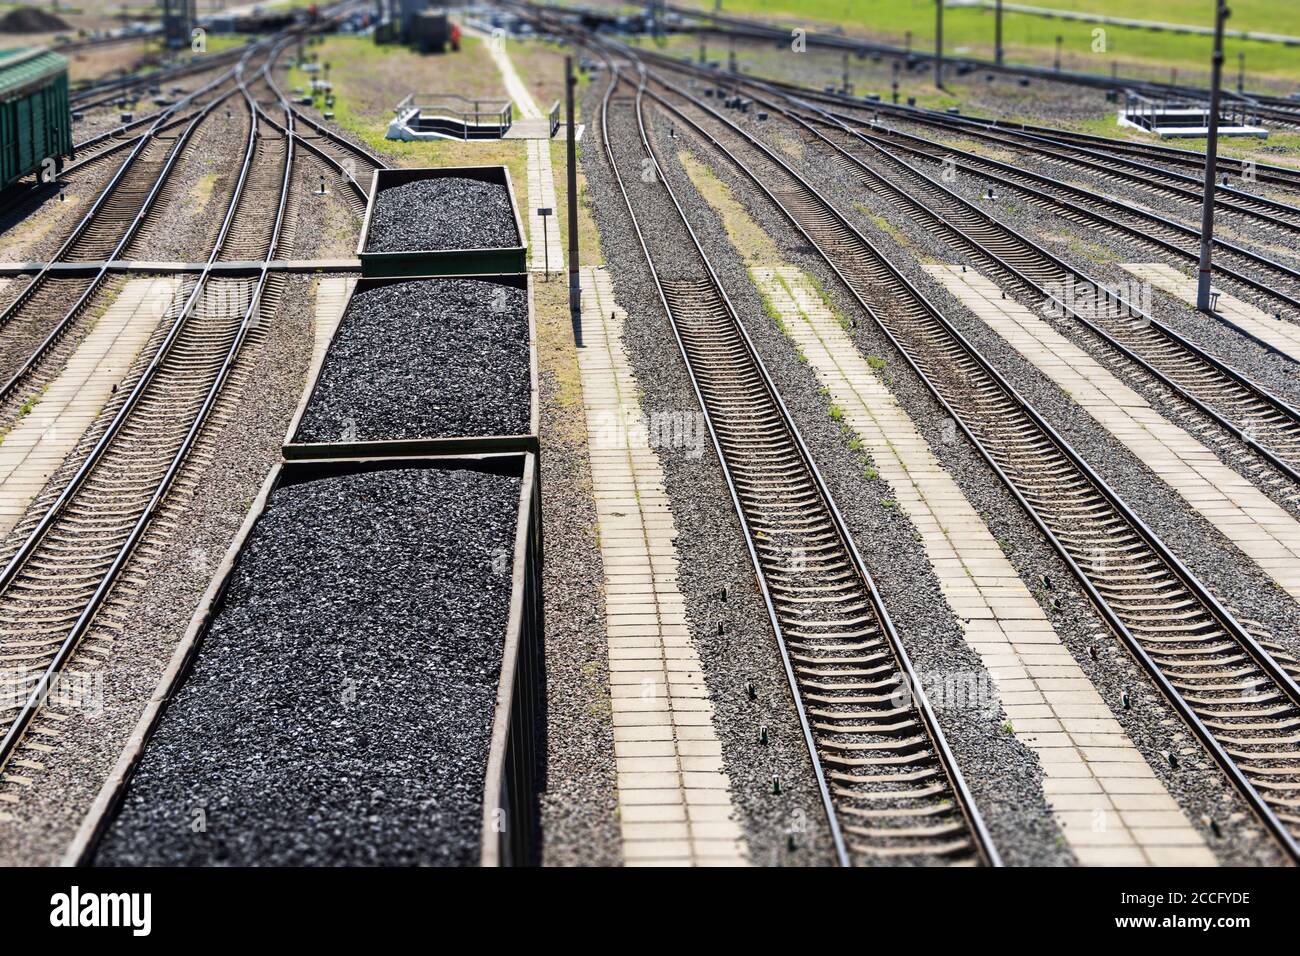 wagons chargés de charbon, un train transporte le charbon Banque D'Images